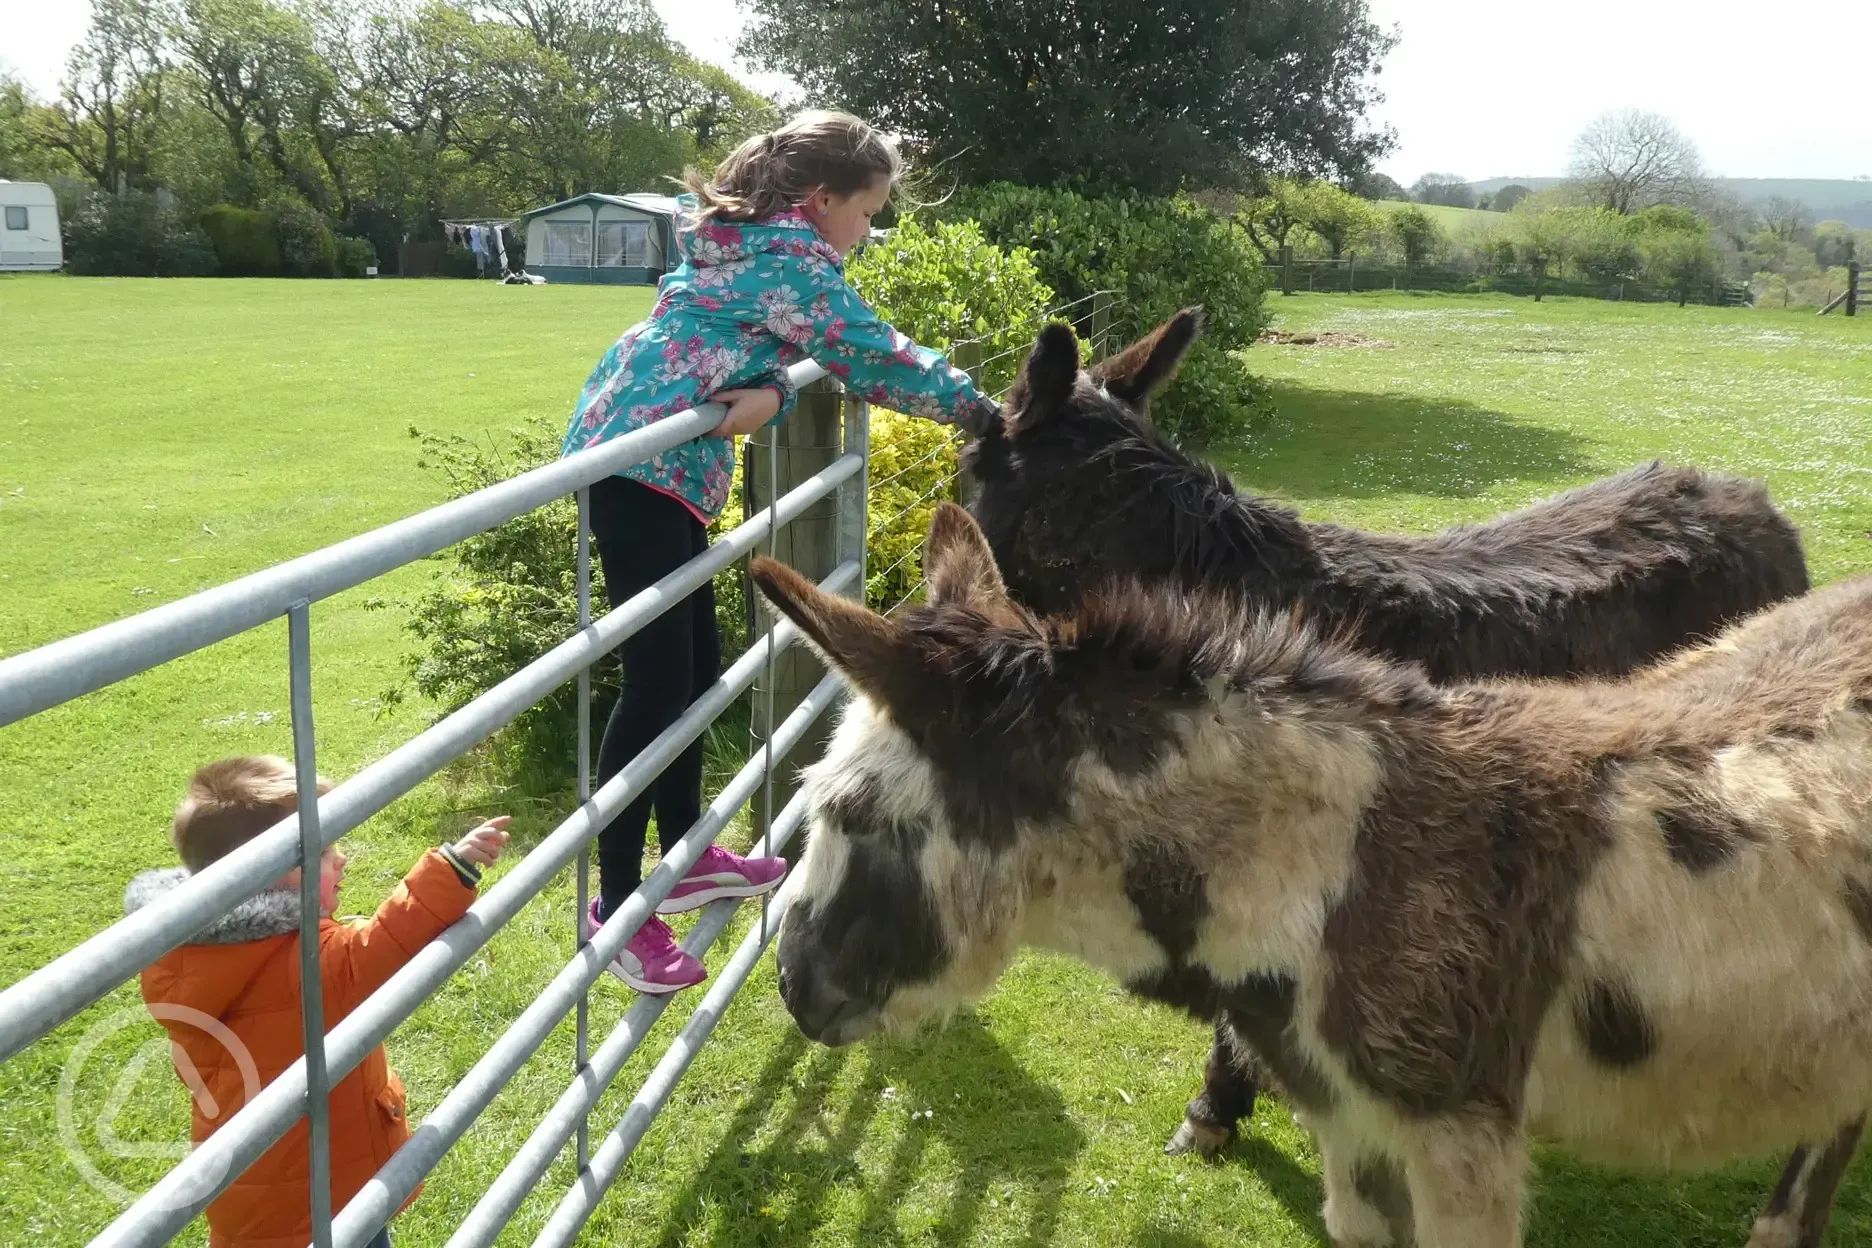 Children feeding donkeys